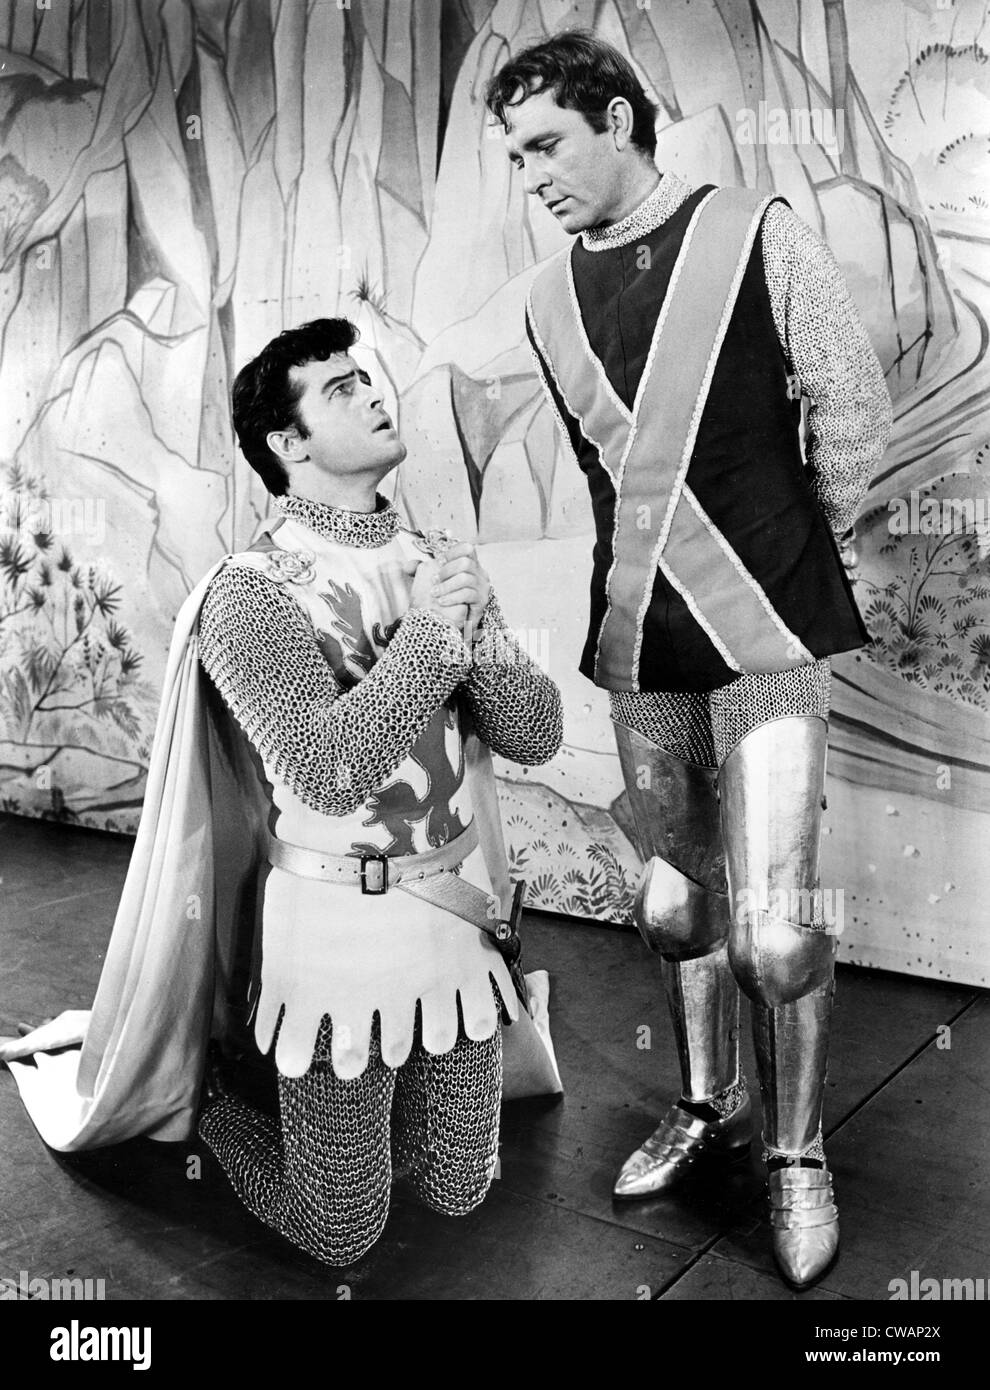 Robert Goulet et Richard Burton dans l'étape de la production de Camelot dans le début des années 1960. Avec la permission de la CSU : Archives / Everett Banque D'Images